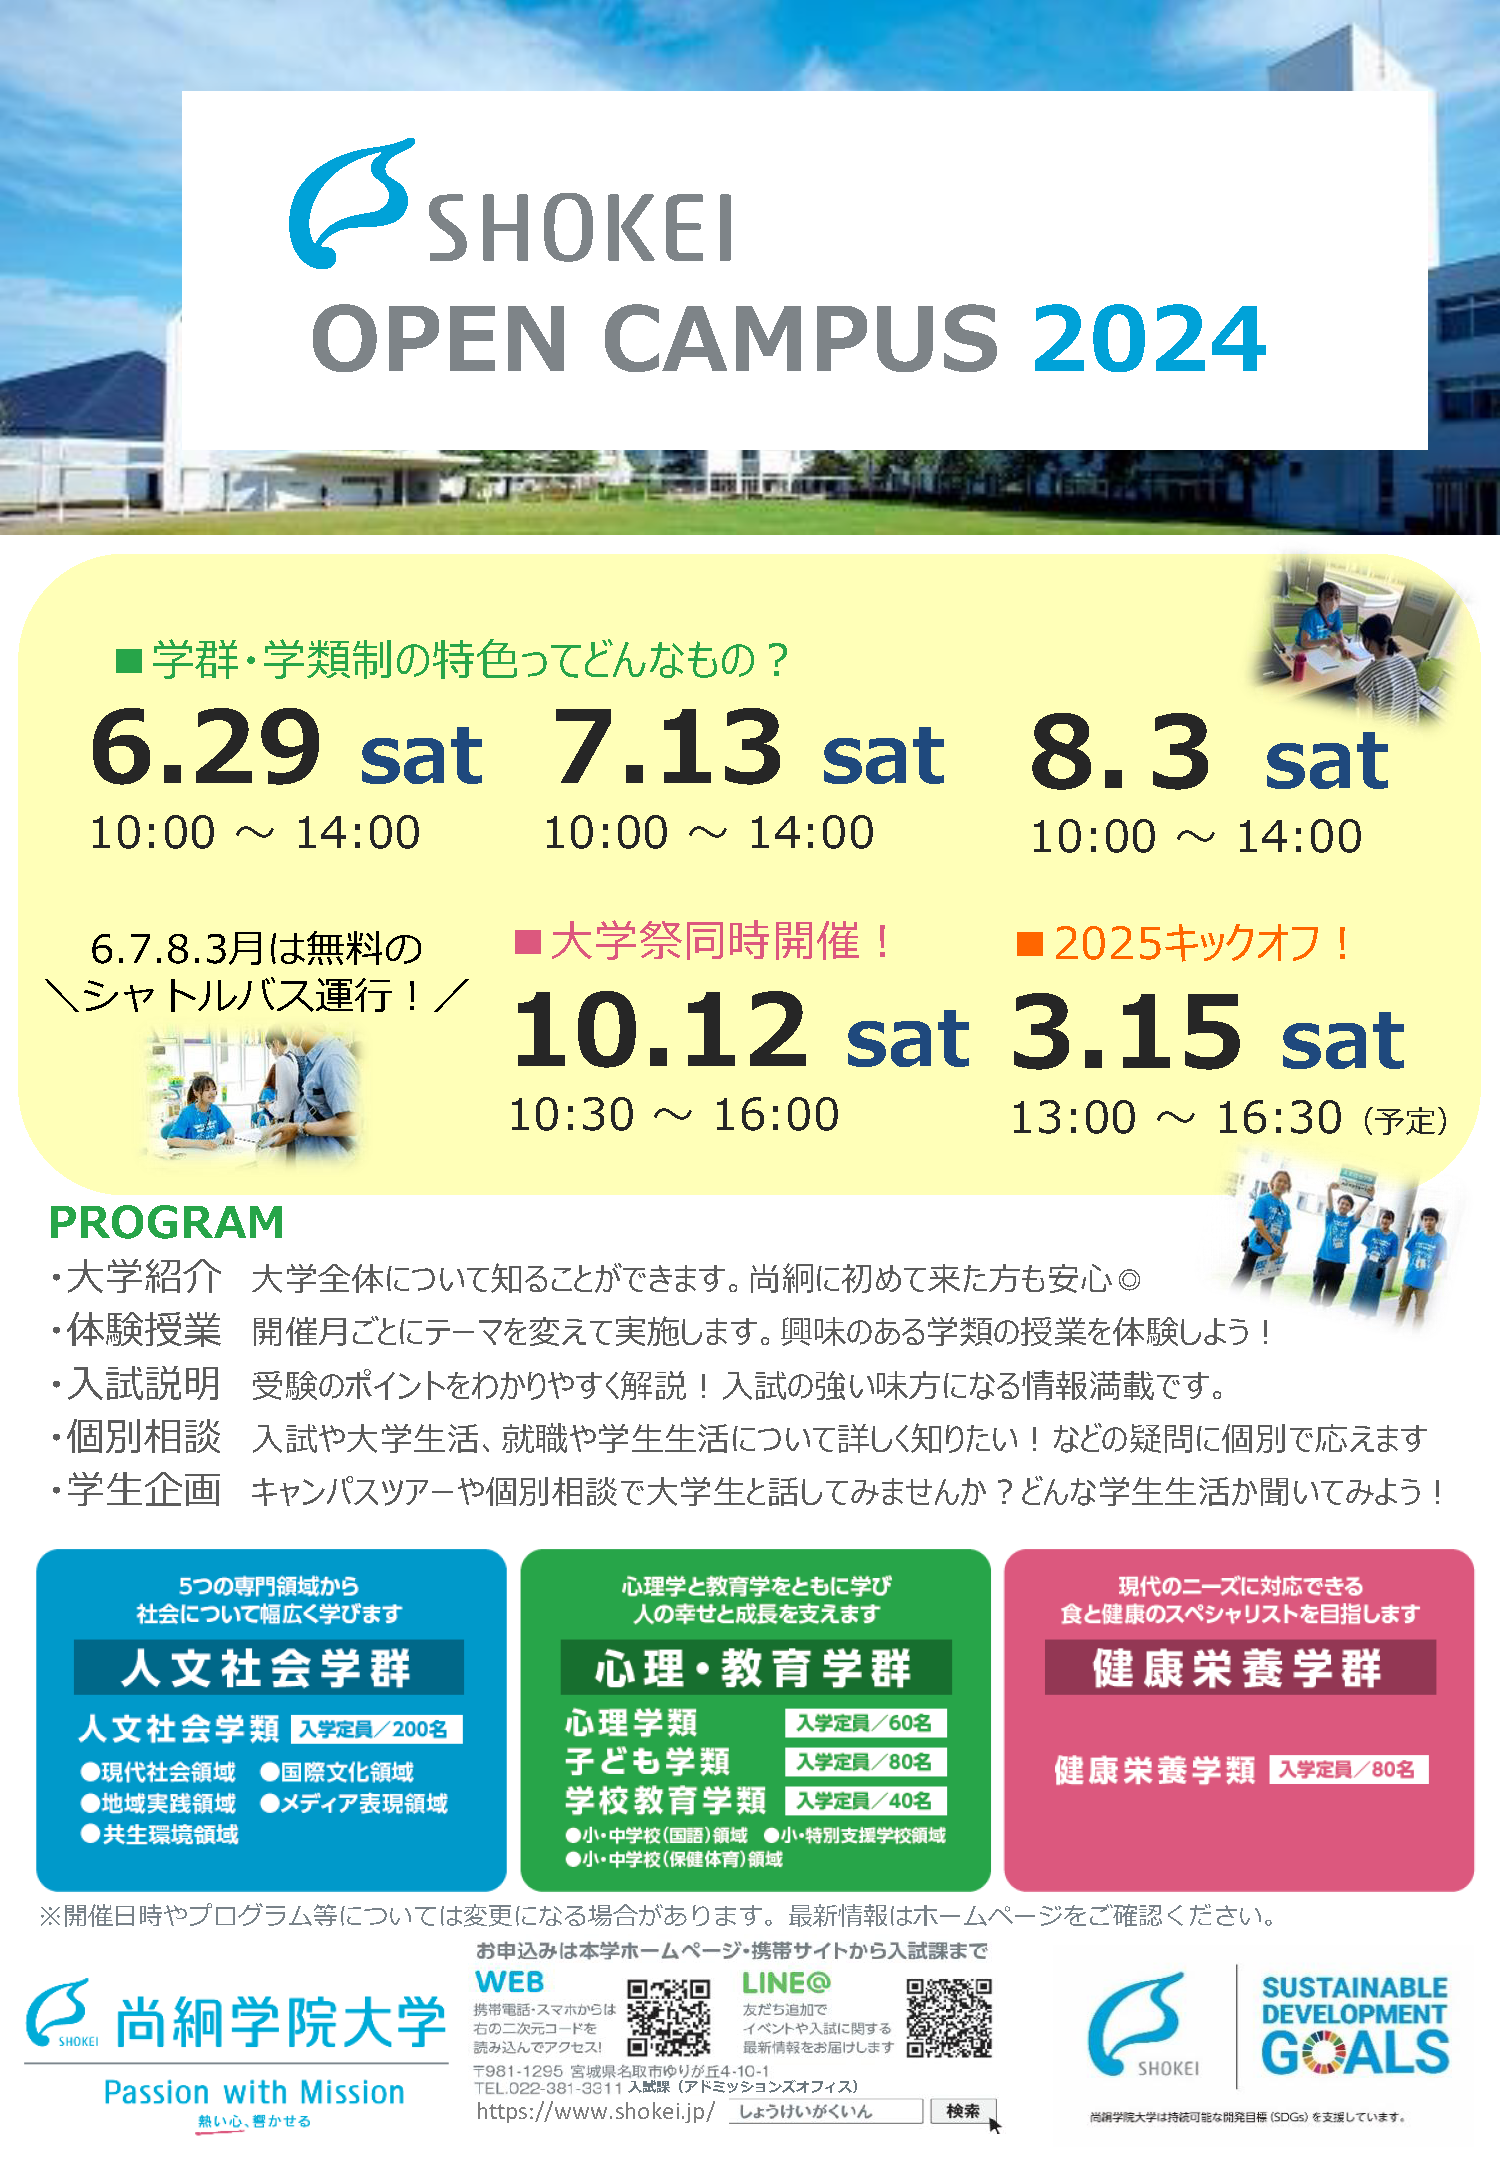 尚絅学院大学のオープンキャンパス　学群・学類制の特色ってどんなもの？